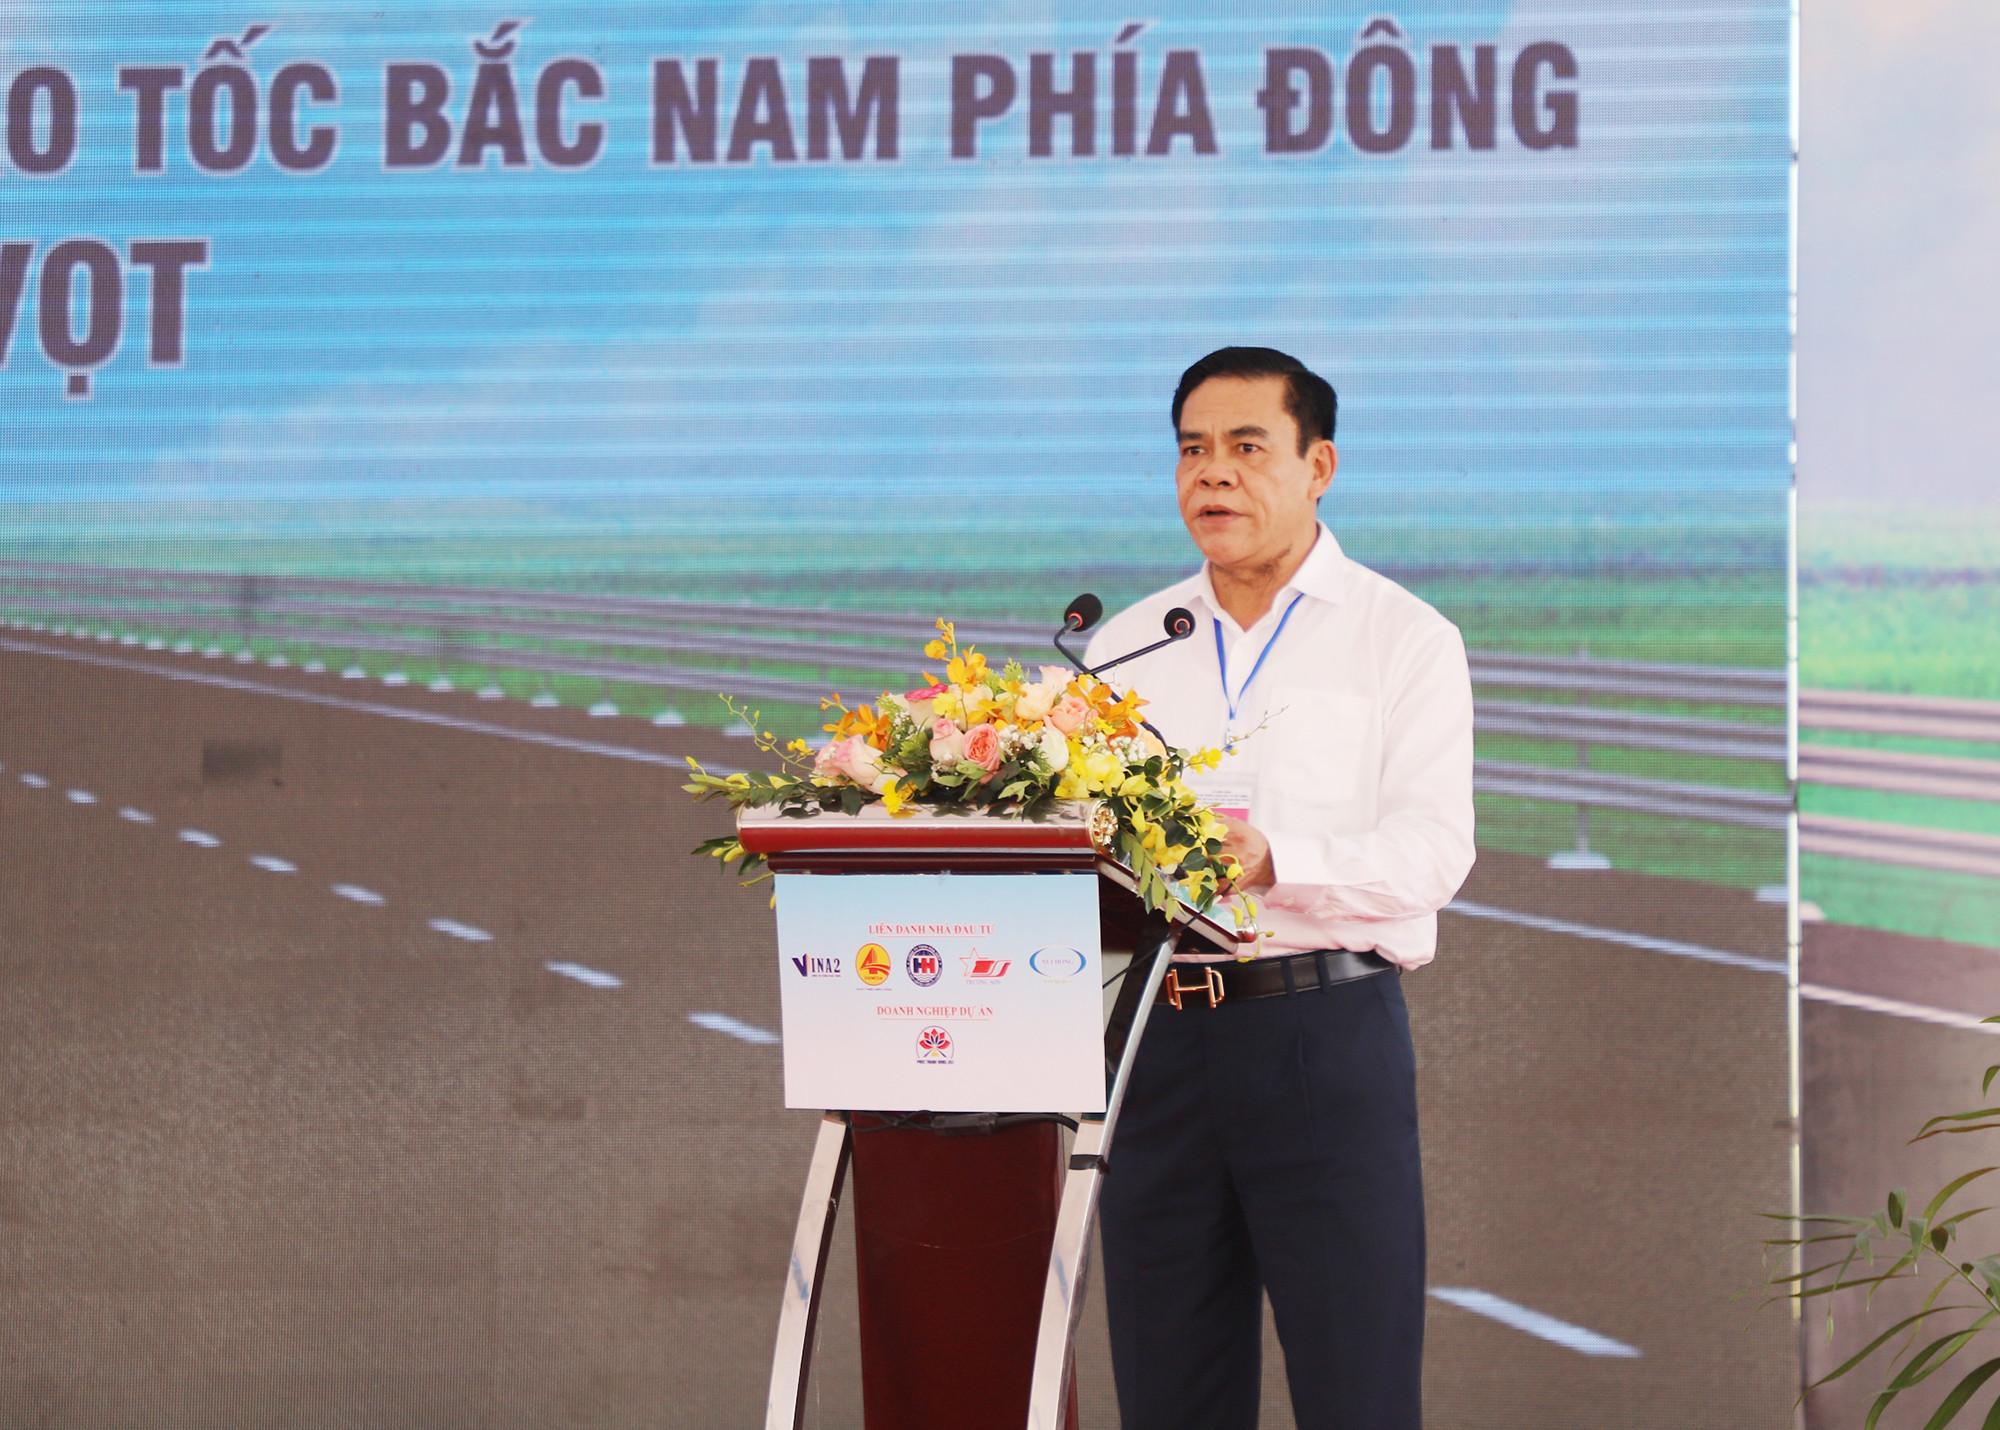 Đồng chí Võ Trọng Hải - Chủ tịch UBND tỉnh Hà Tĩnh phát biểu tại buỗi lễ. Ảnh: Phạm Bằng